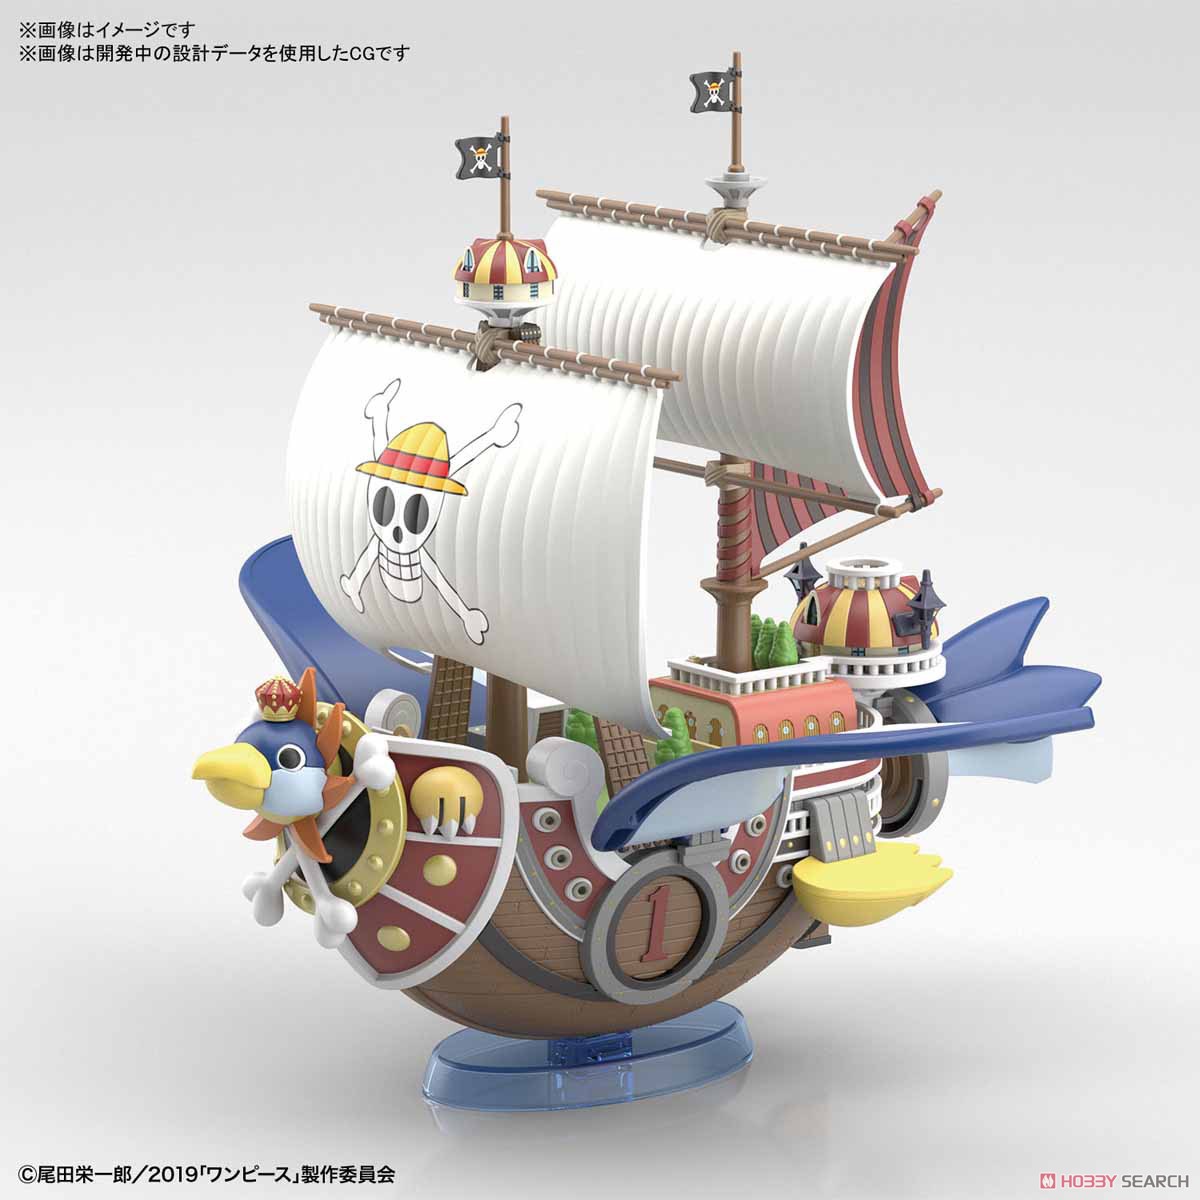 偉大なる船コレクション『サウザンド・サニー号 フライングモデル』ワンピース プラモデル-001